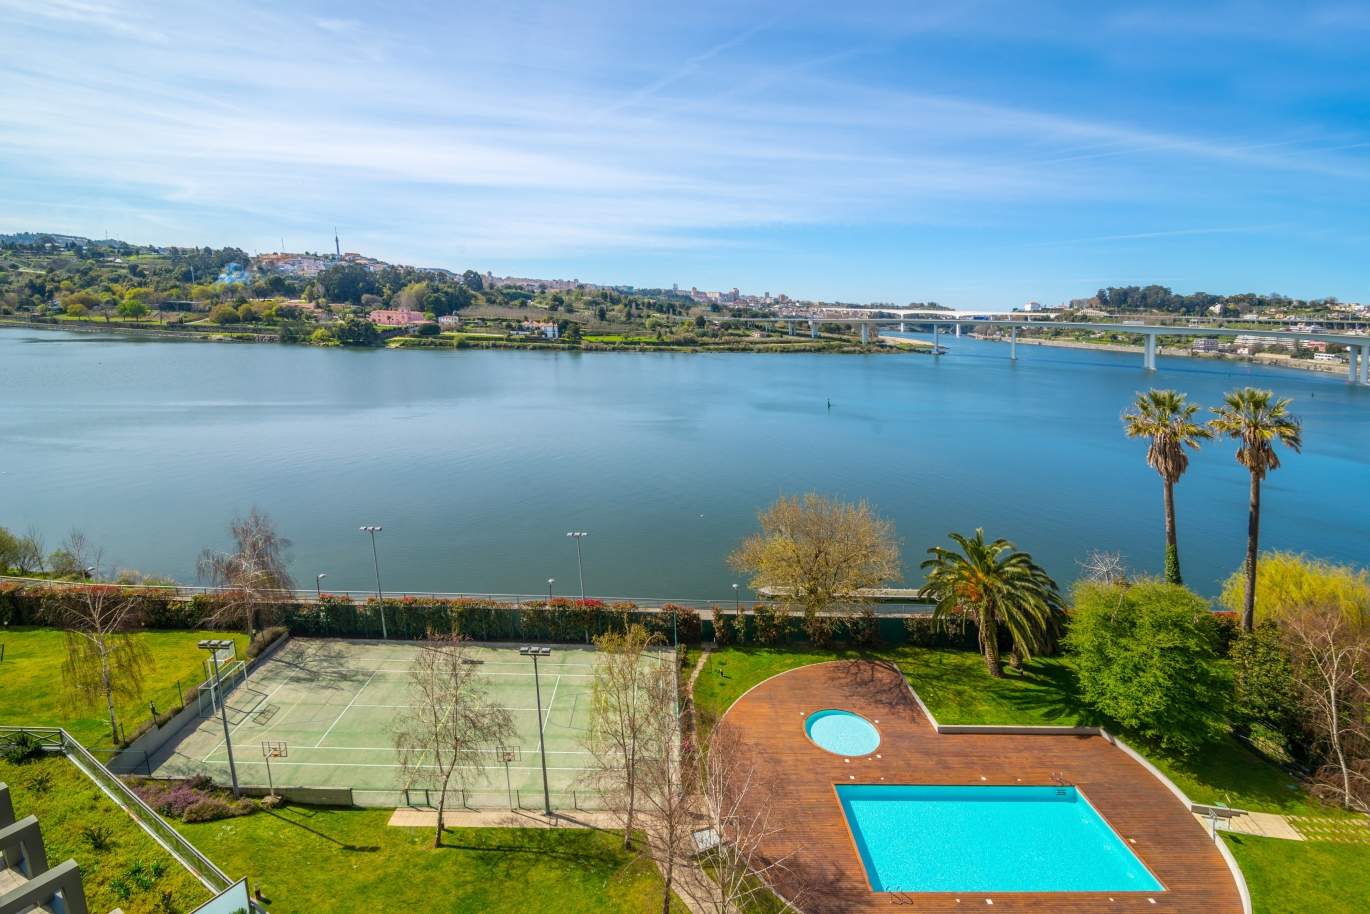 Venda apartamento com vistas rio, condomínio de luxo, Porto, Portugal_99617